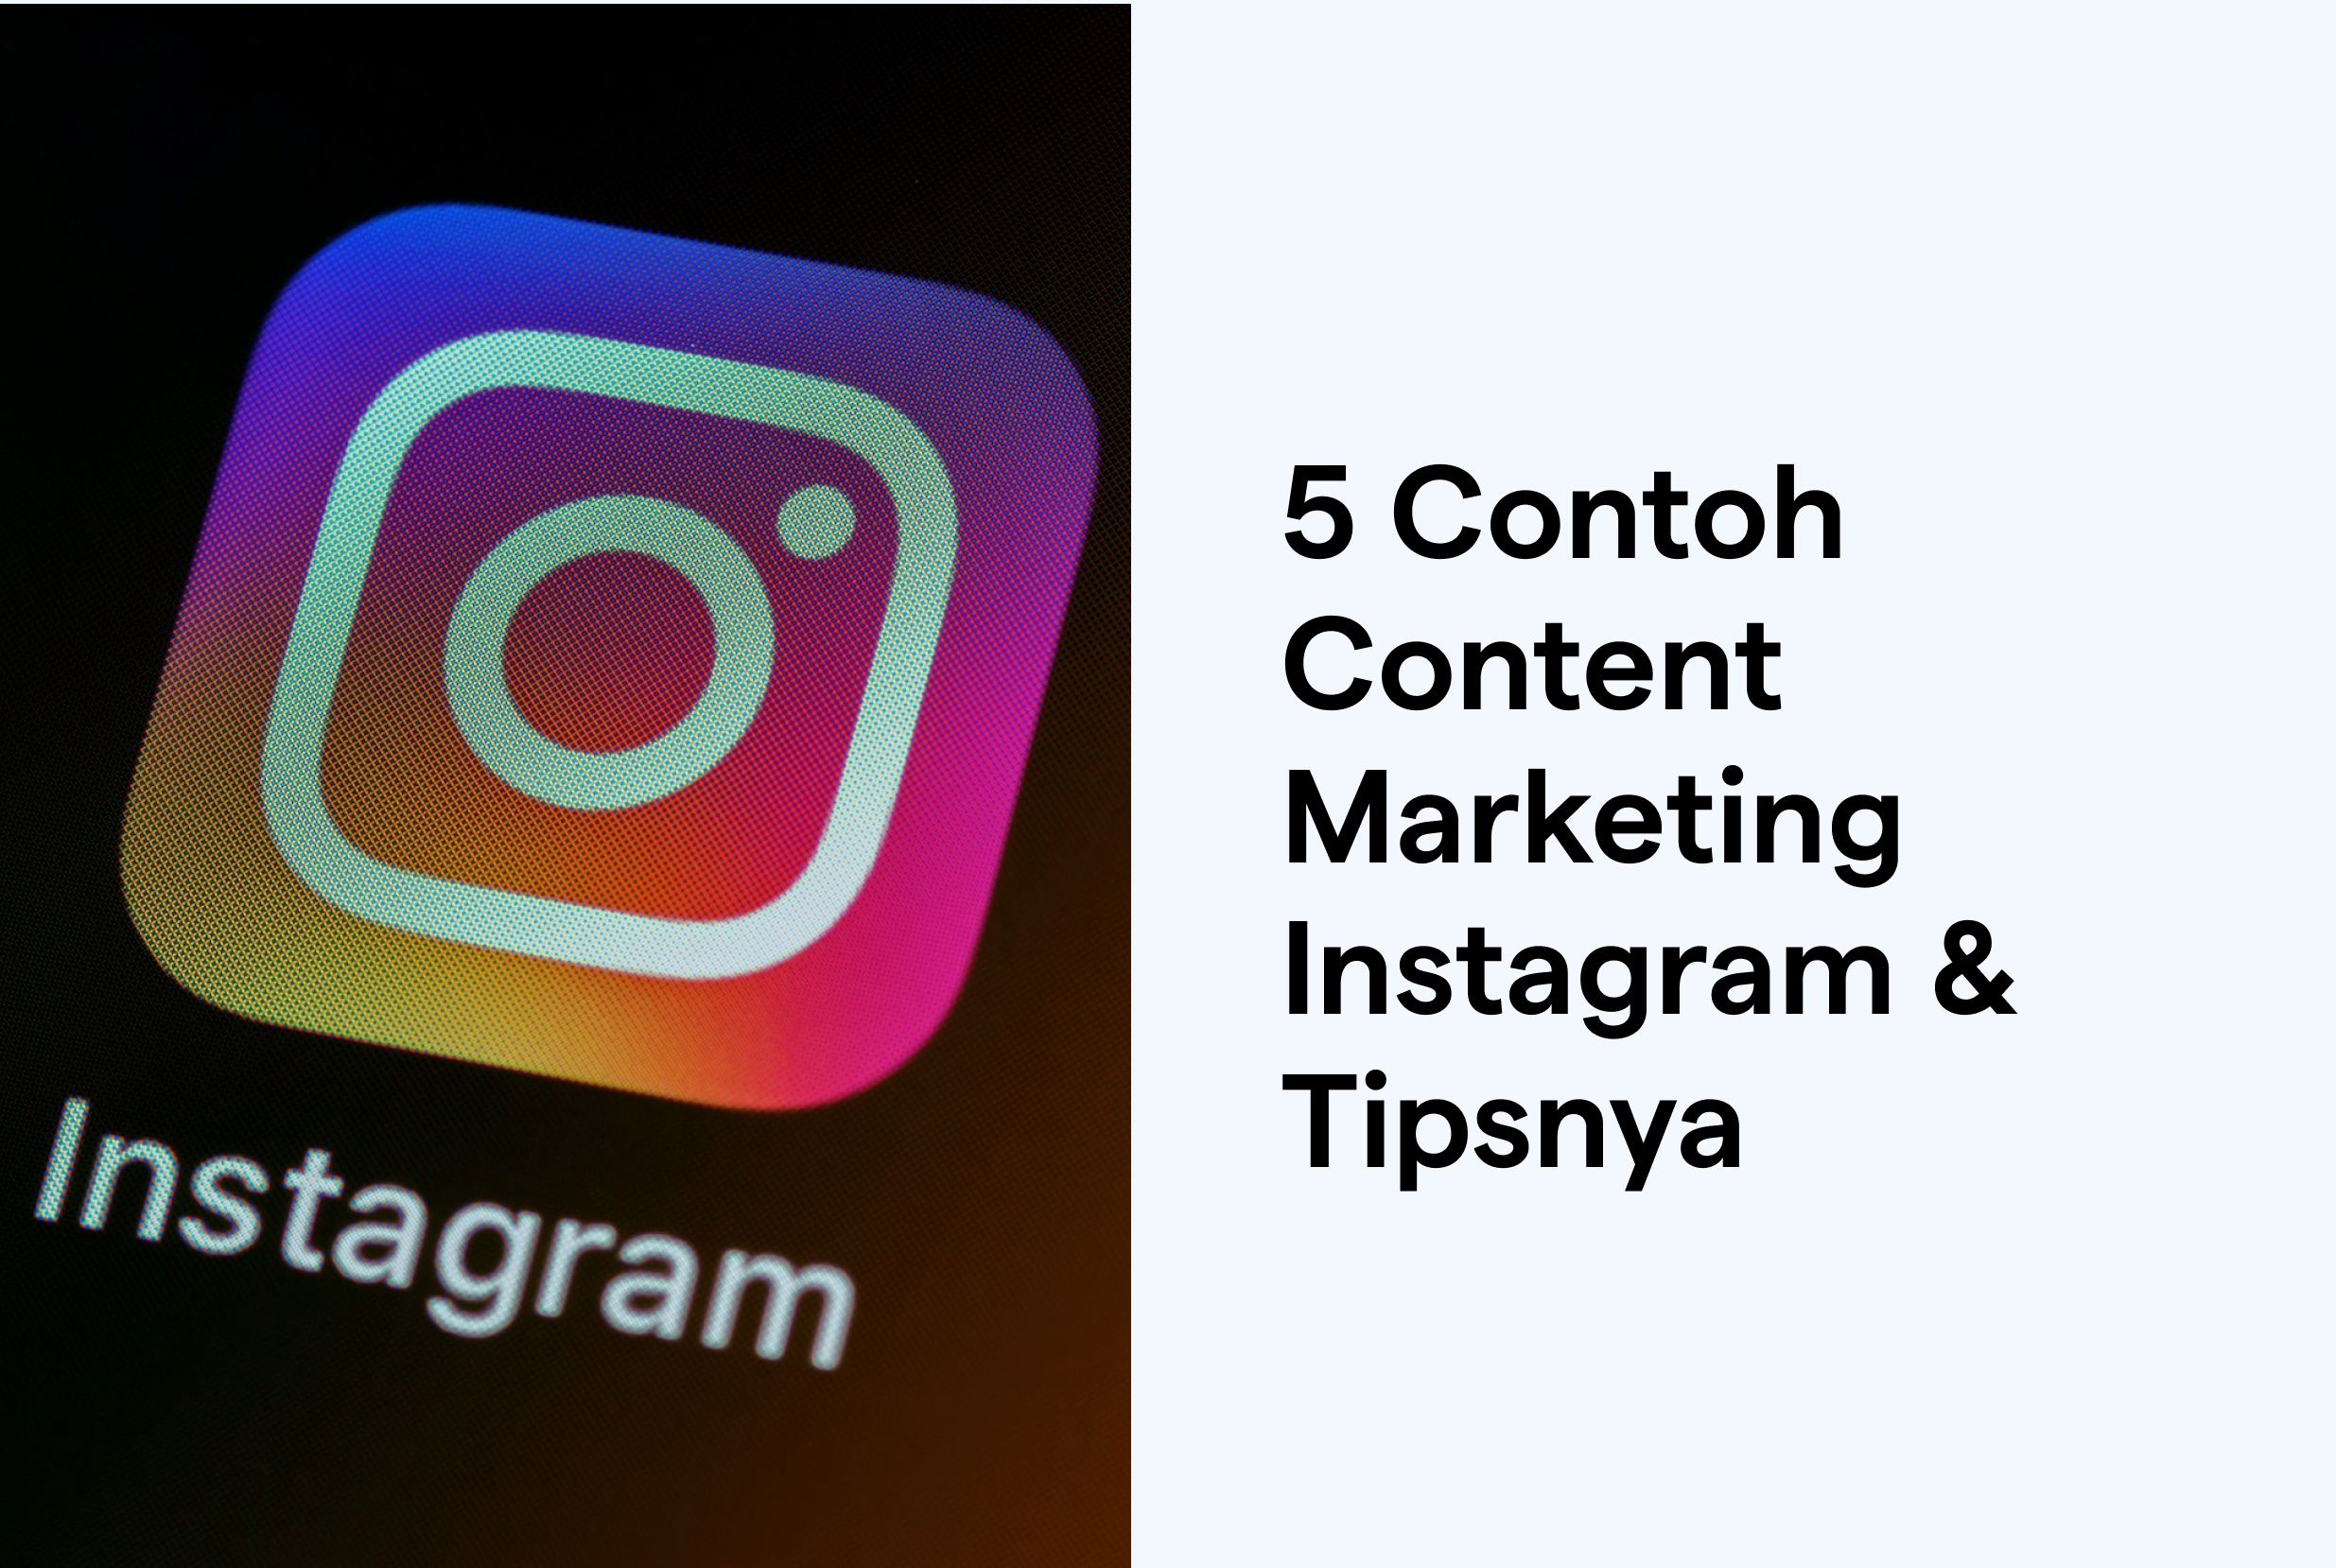 5 Contoh Content Marketing Instagram yang Mudah Diterapkan